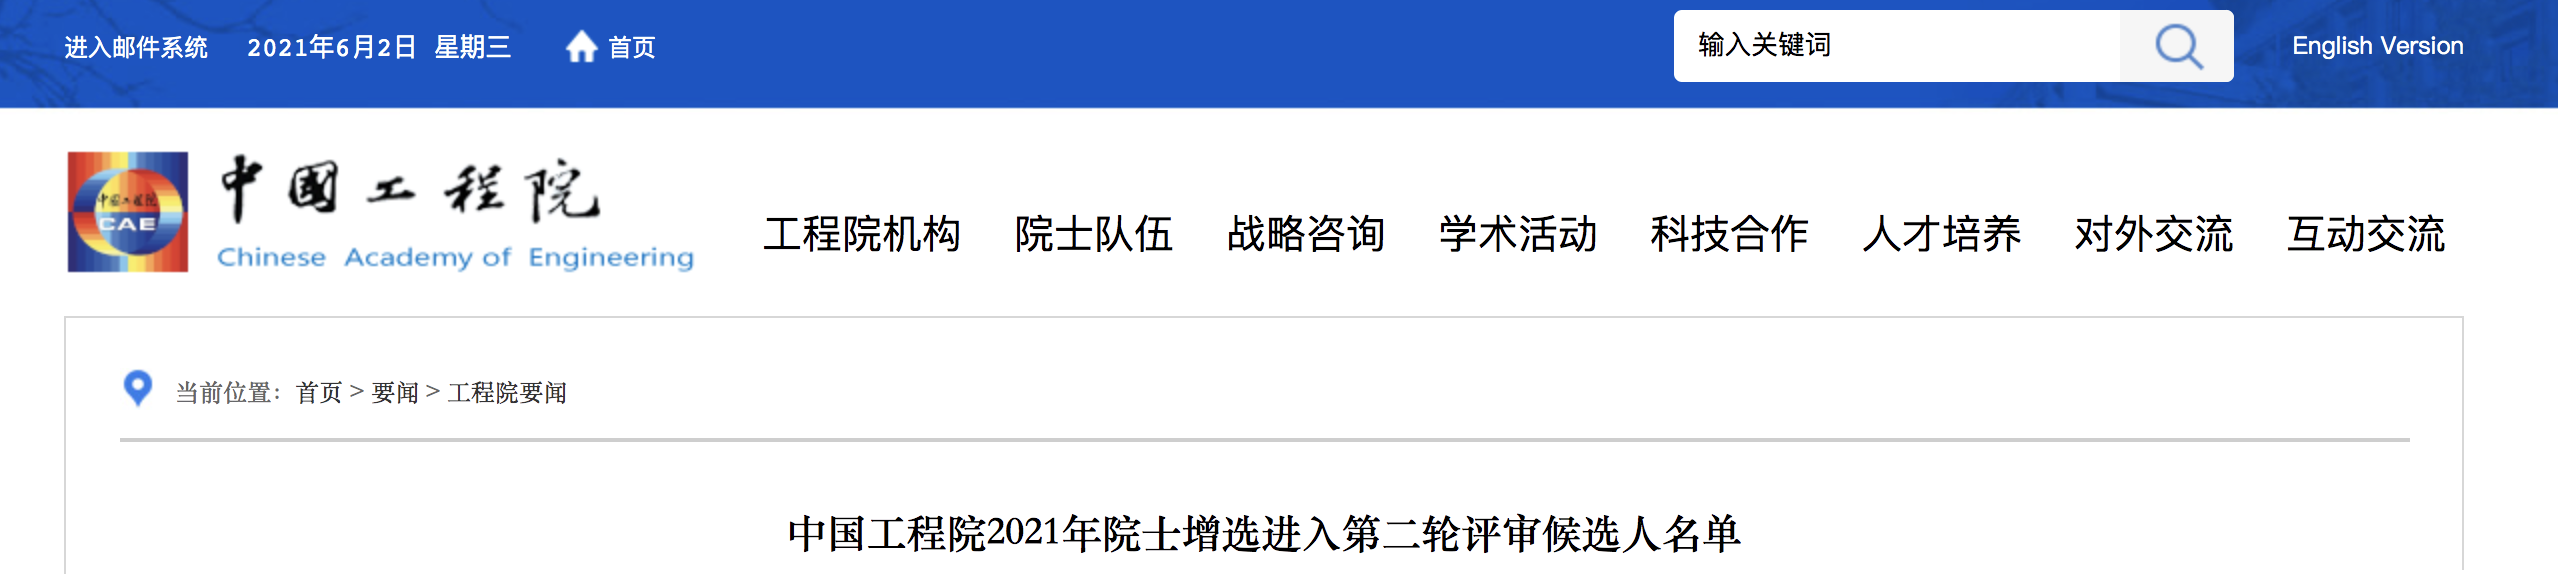 中国工程院2021年院士增选第<font color="red">二</font>轮候选人名单公布，医药卫生学部共34人